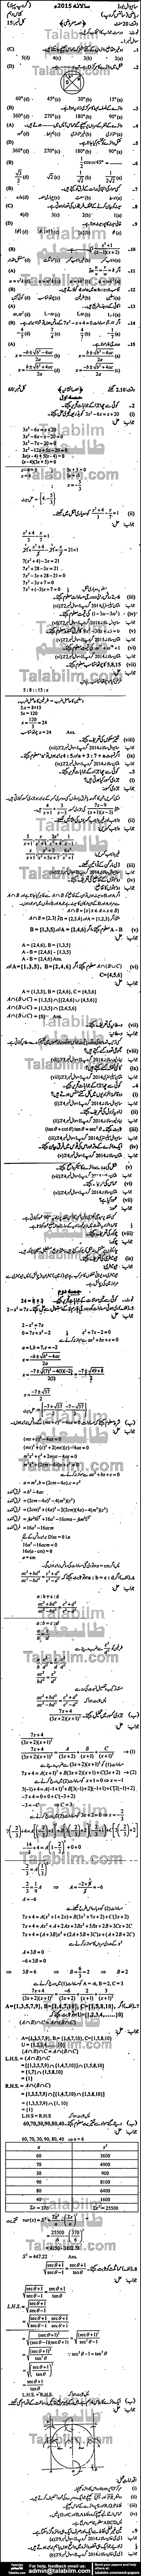 Math 0 past paper for Urdu Medium 2015 Group-I